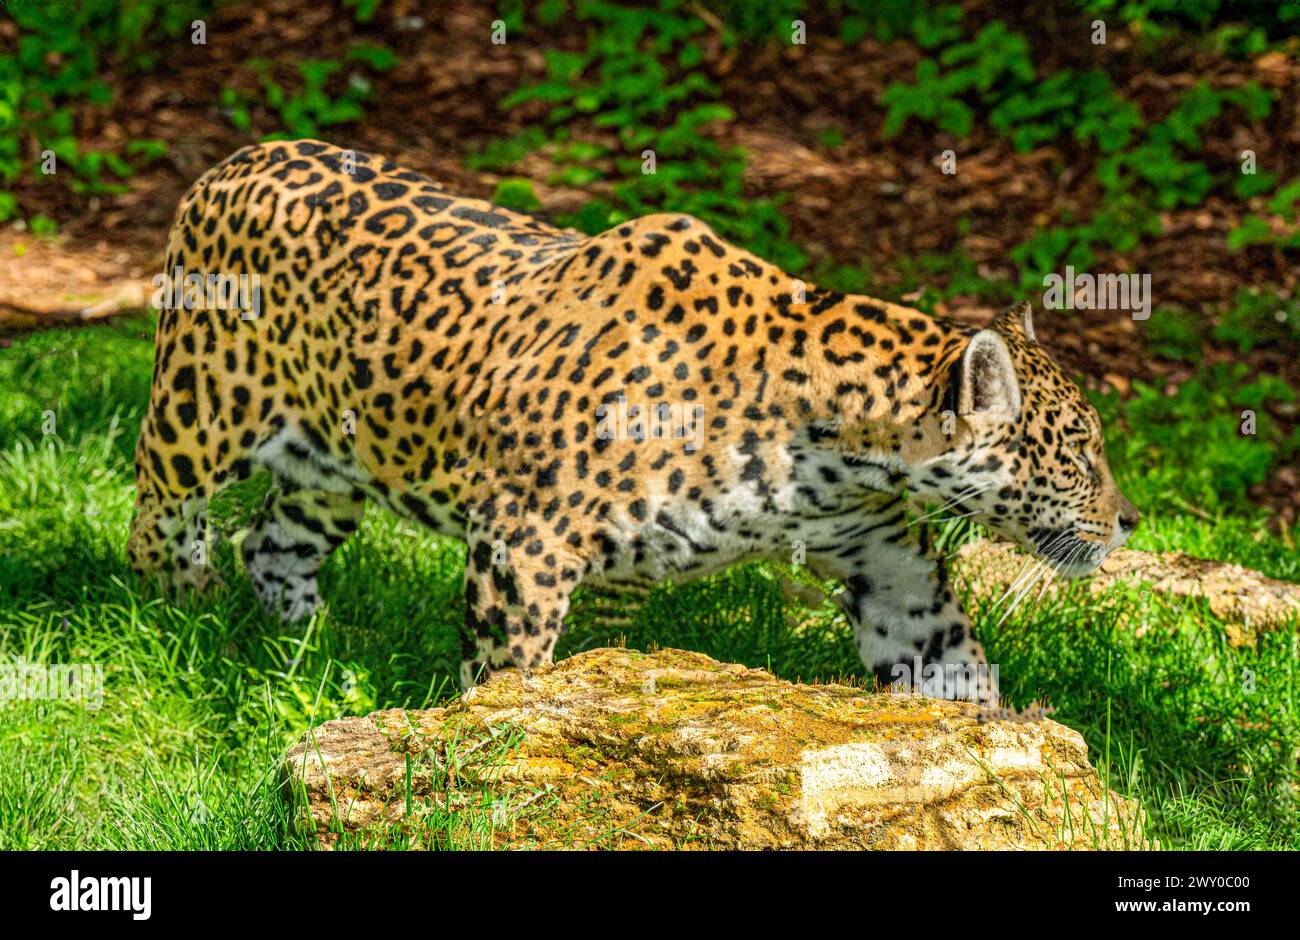 Nahaufnahme eines Jaguar (Panthera onca), männlicher Erwachsener. Lebt in Mexiko, Zentralamerika, der nördlichen Hälfte Südamerikas, Brasilien. Stockfoto